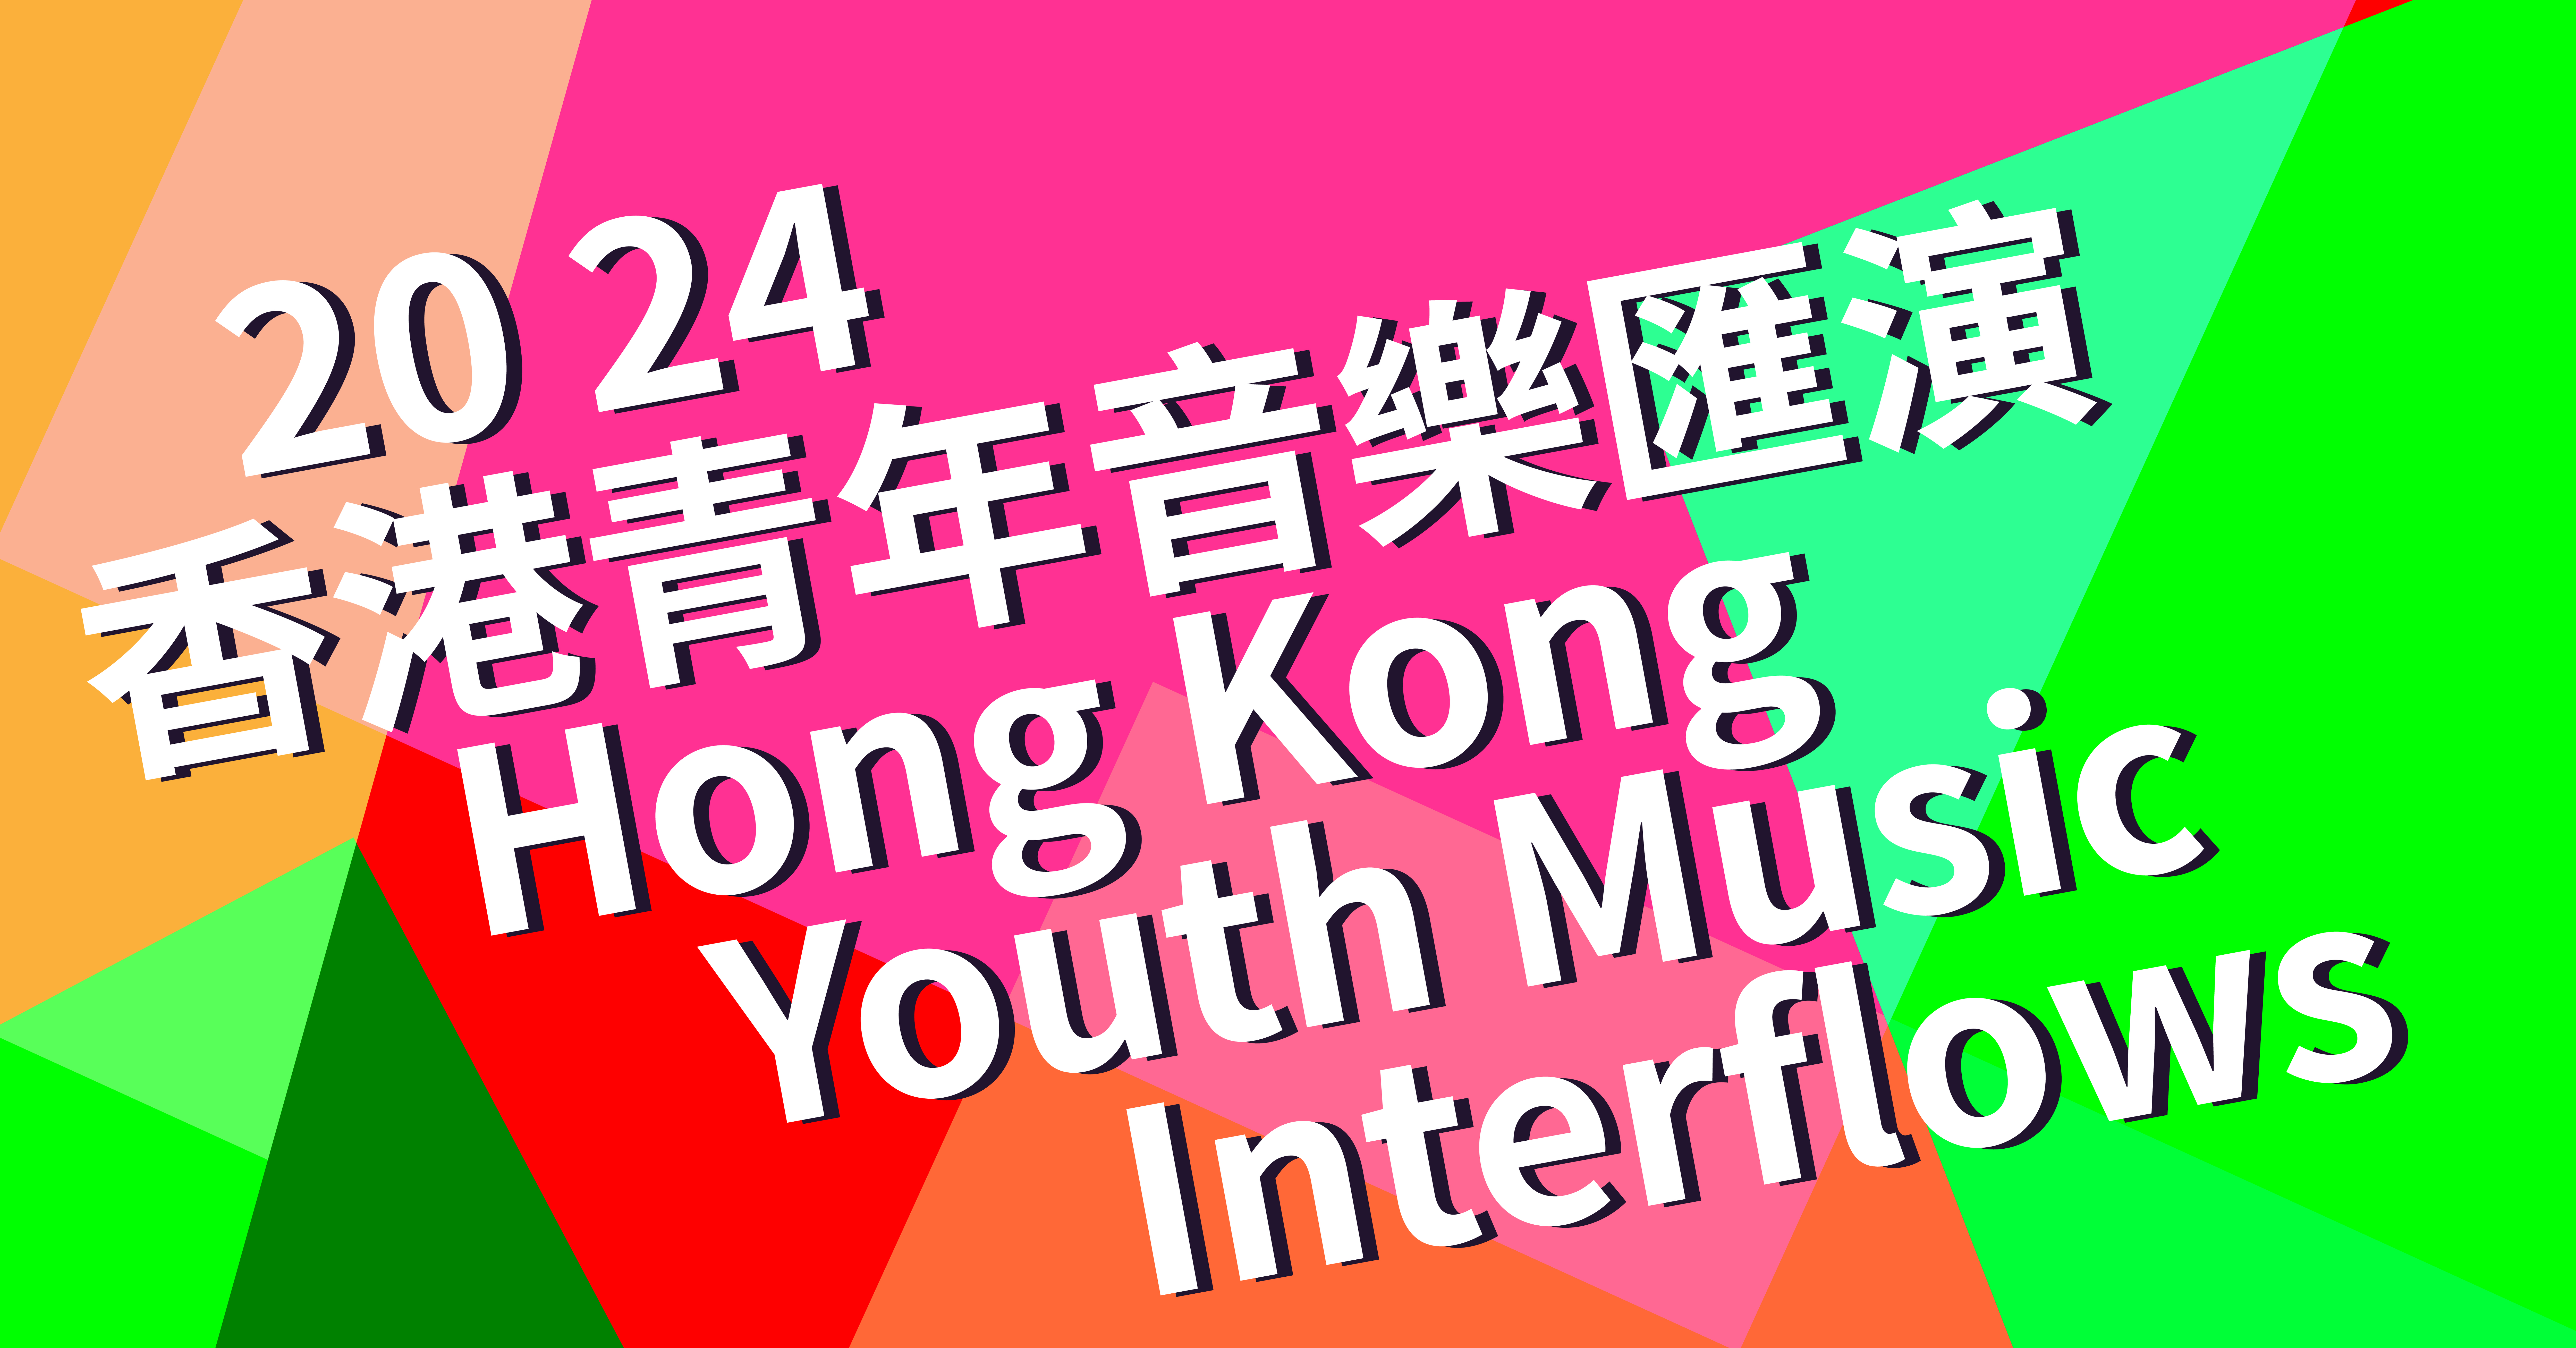 2024 Hong Kong Youth Music Interflows